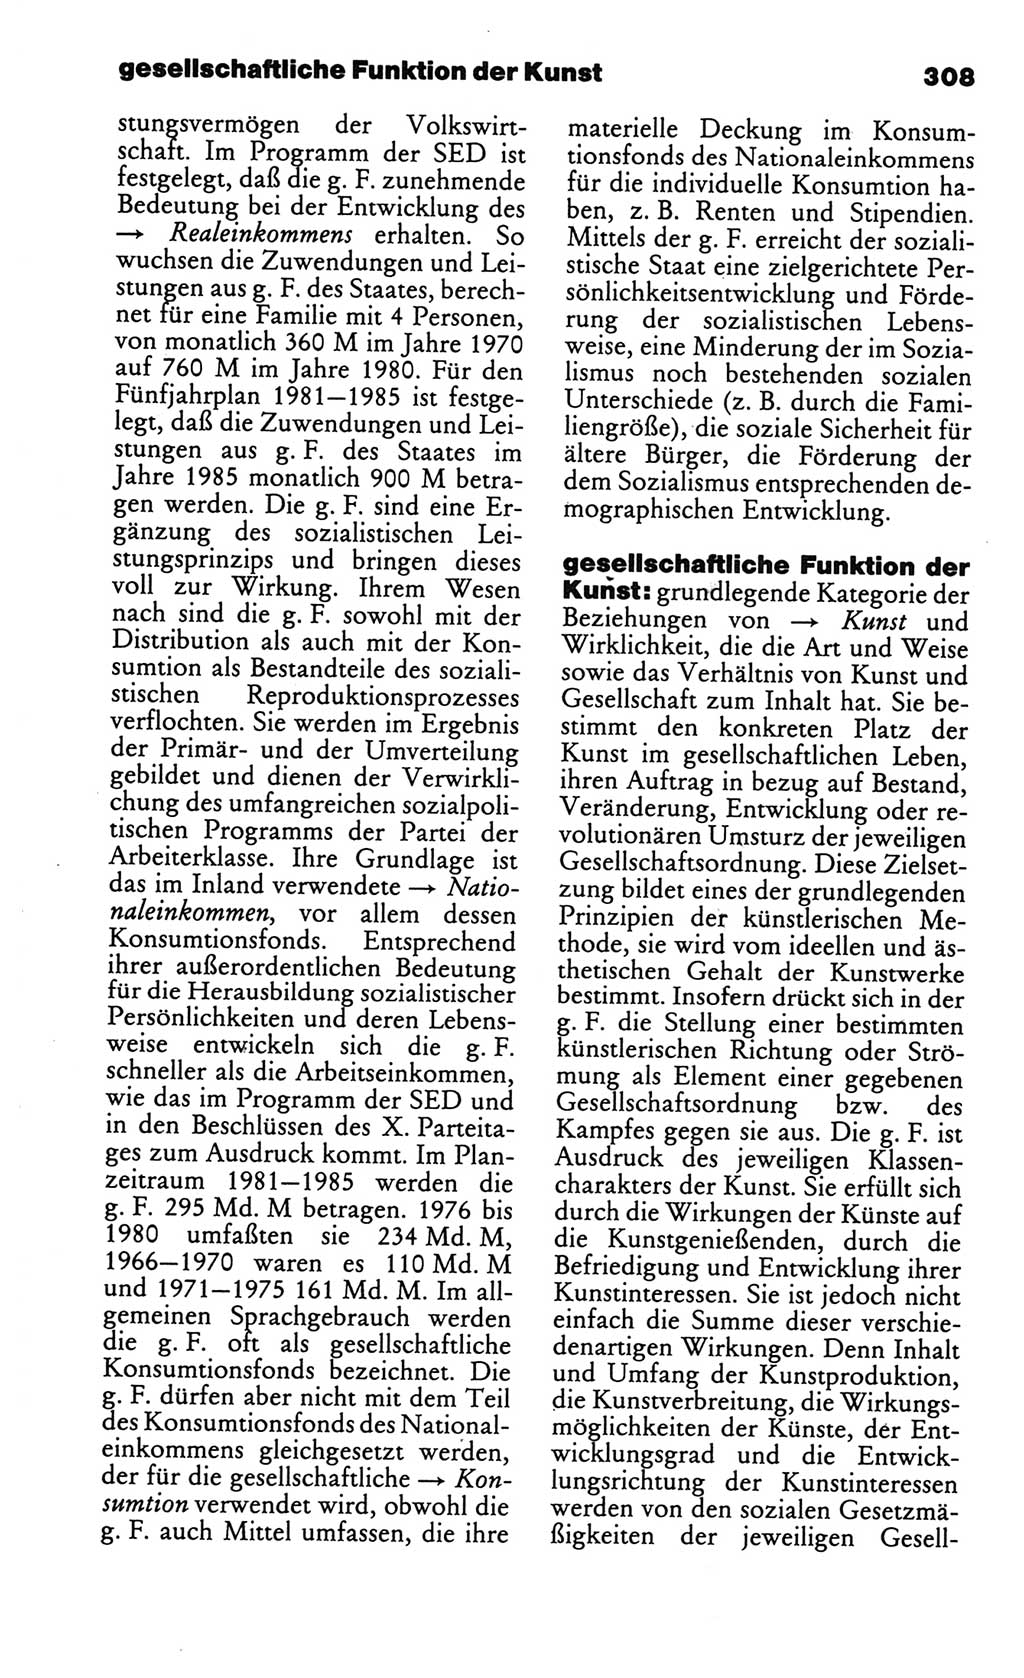 Kleines politisches Wörterbuch [Deutsche Demokratische Republik (DDR)] 1986, Seite 308 (Kl. pol. Wb. DDR 1986, S. 308)